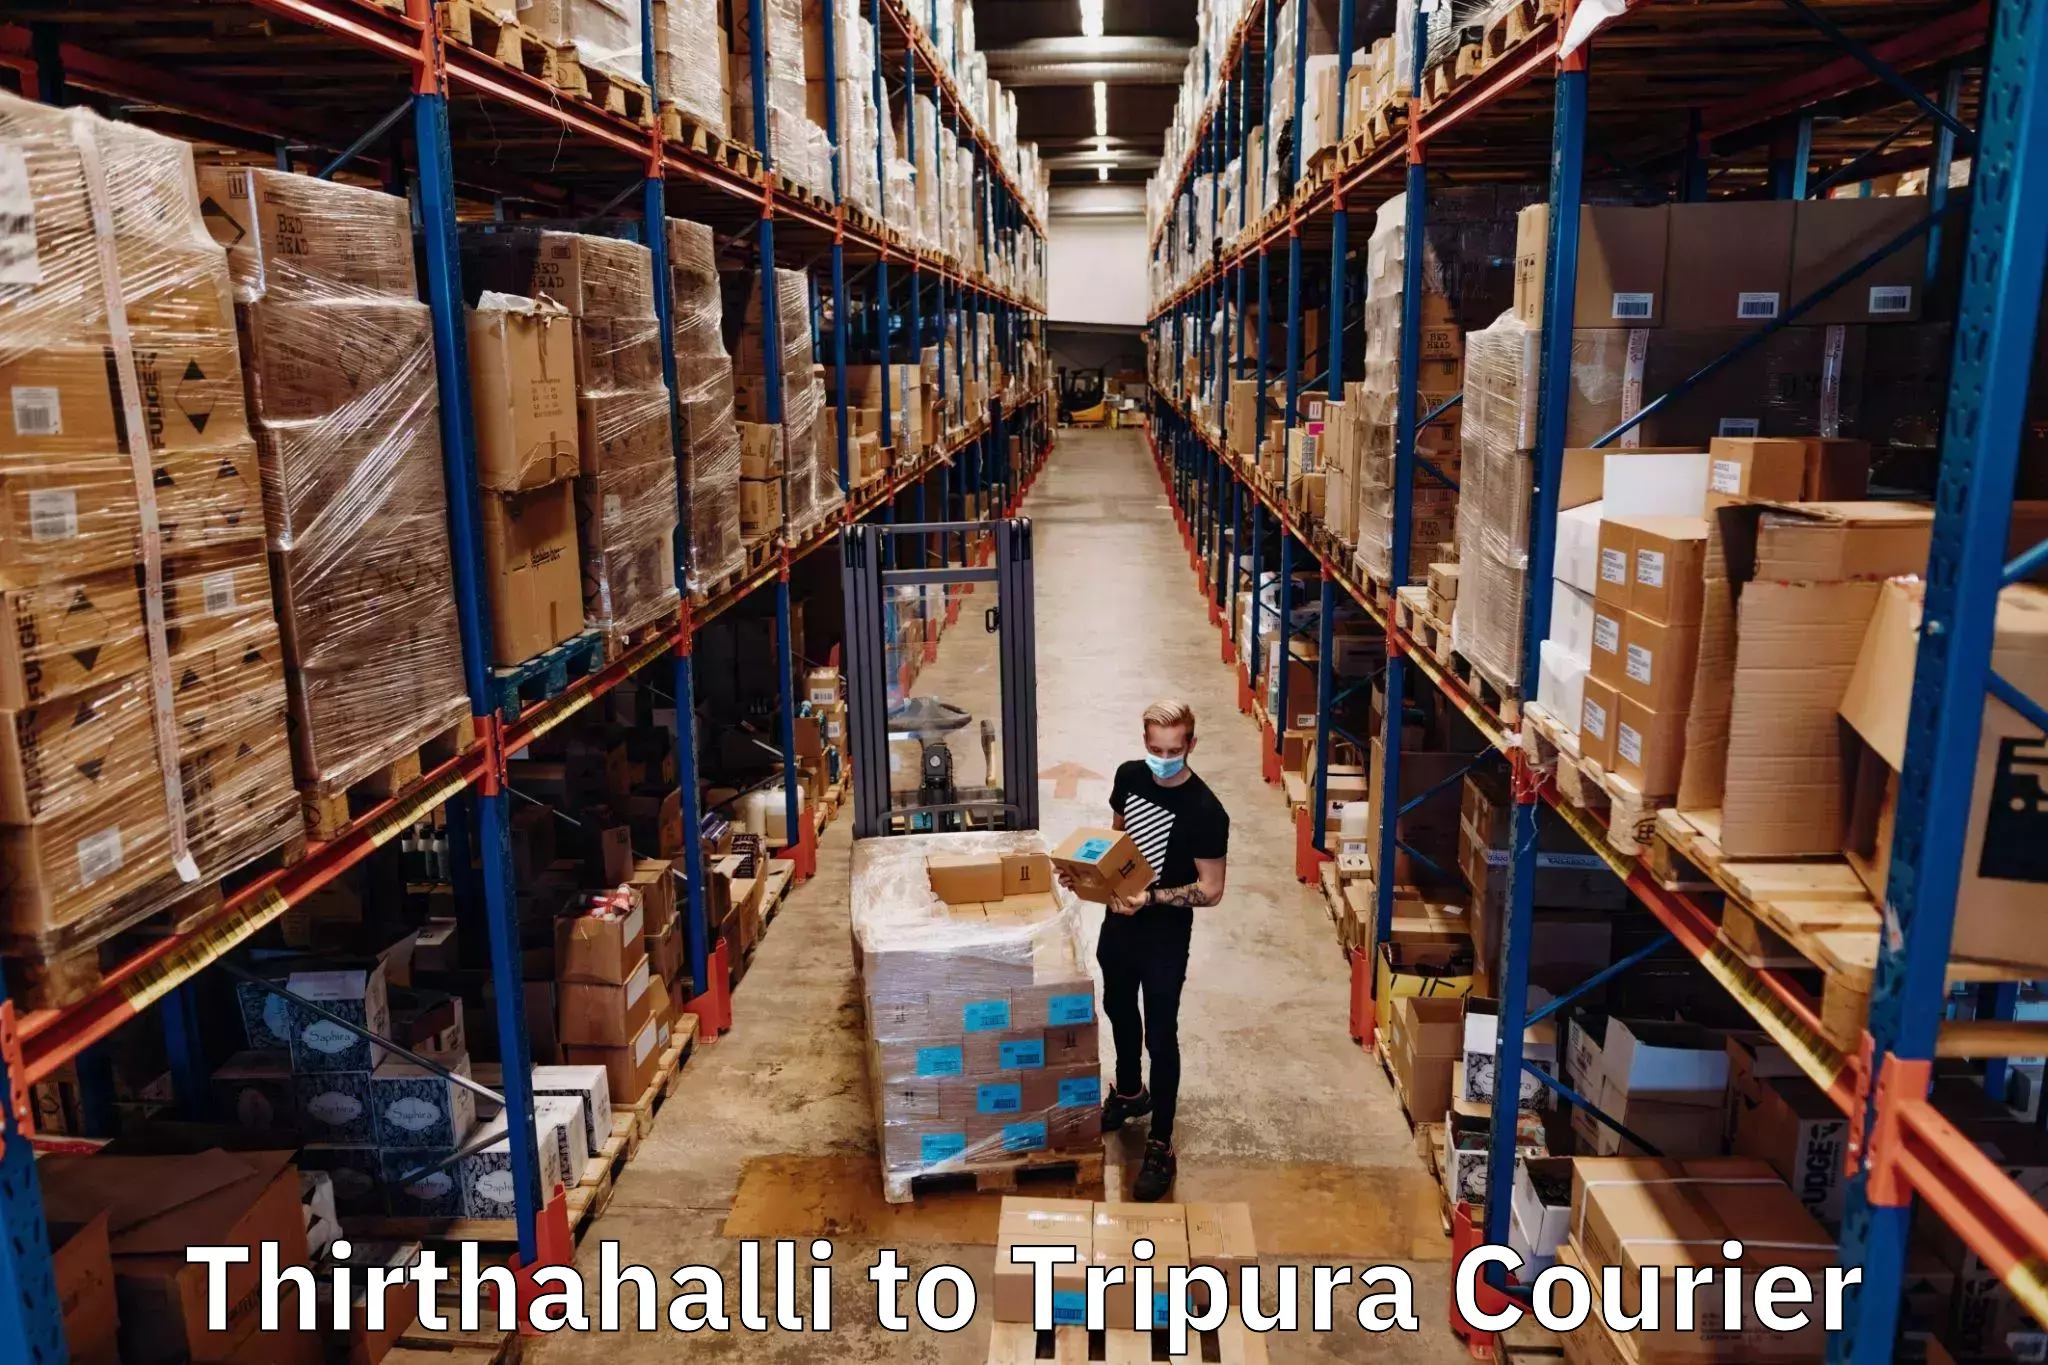 Discount courier rates Thirthahalli to NIT Agartala